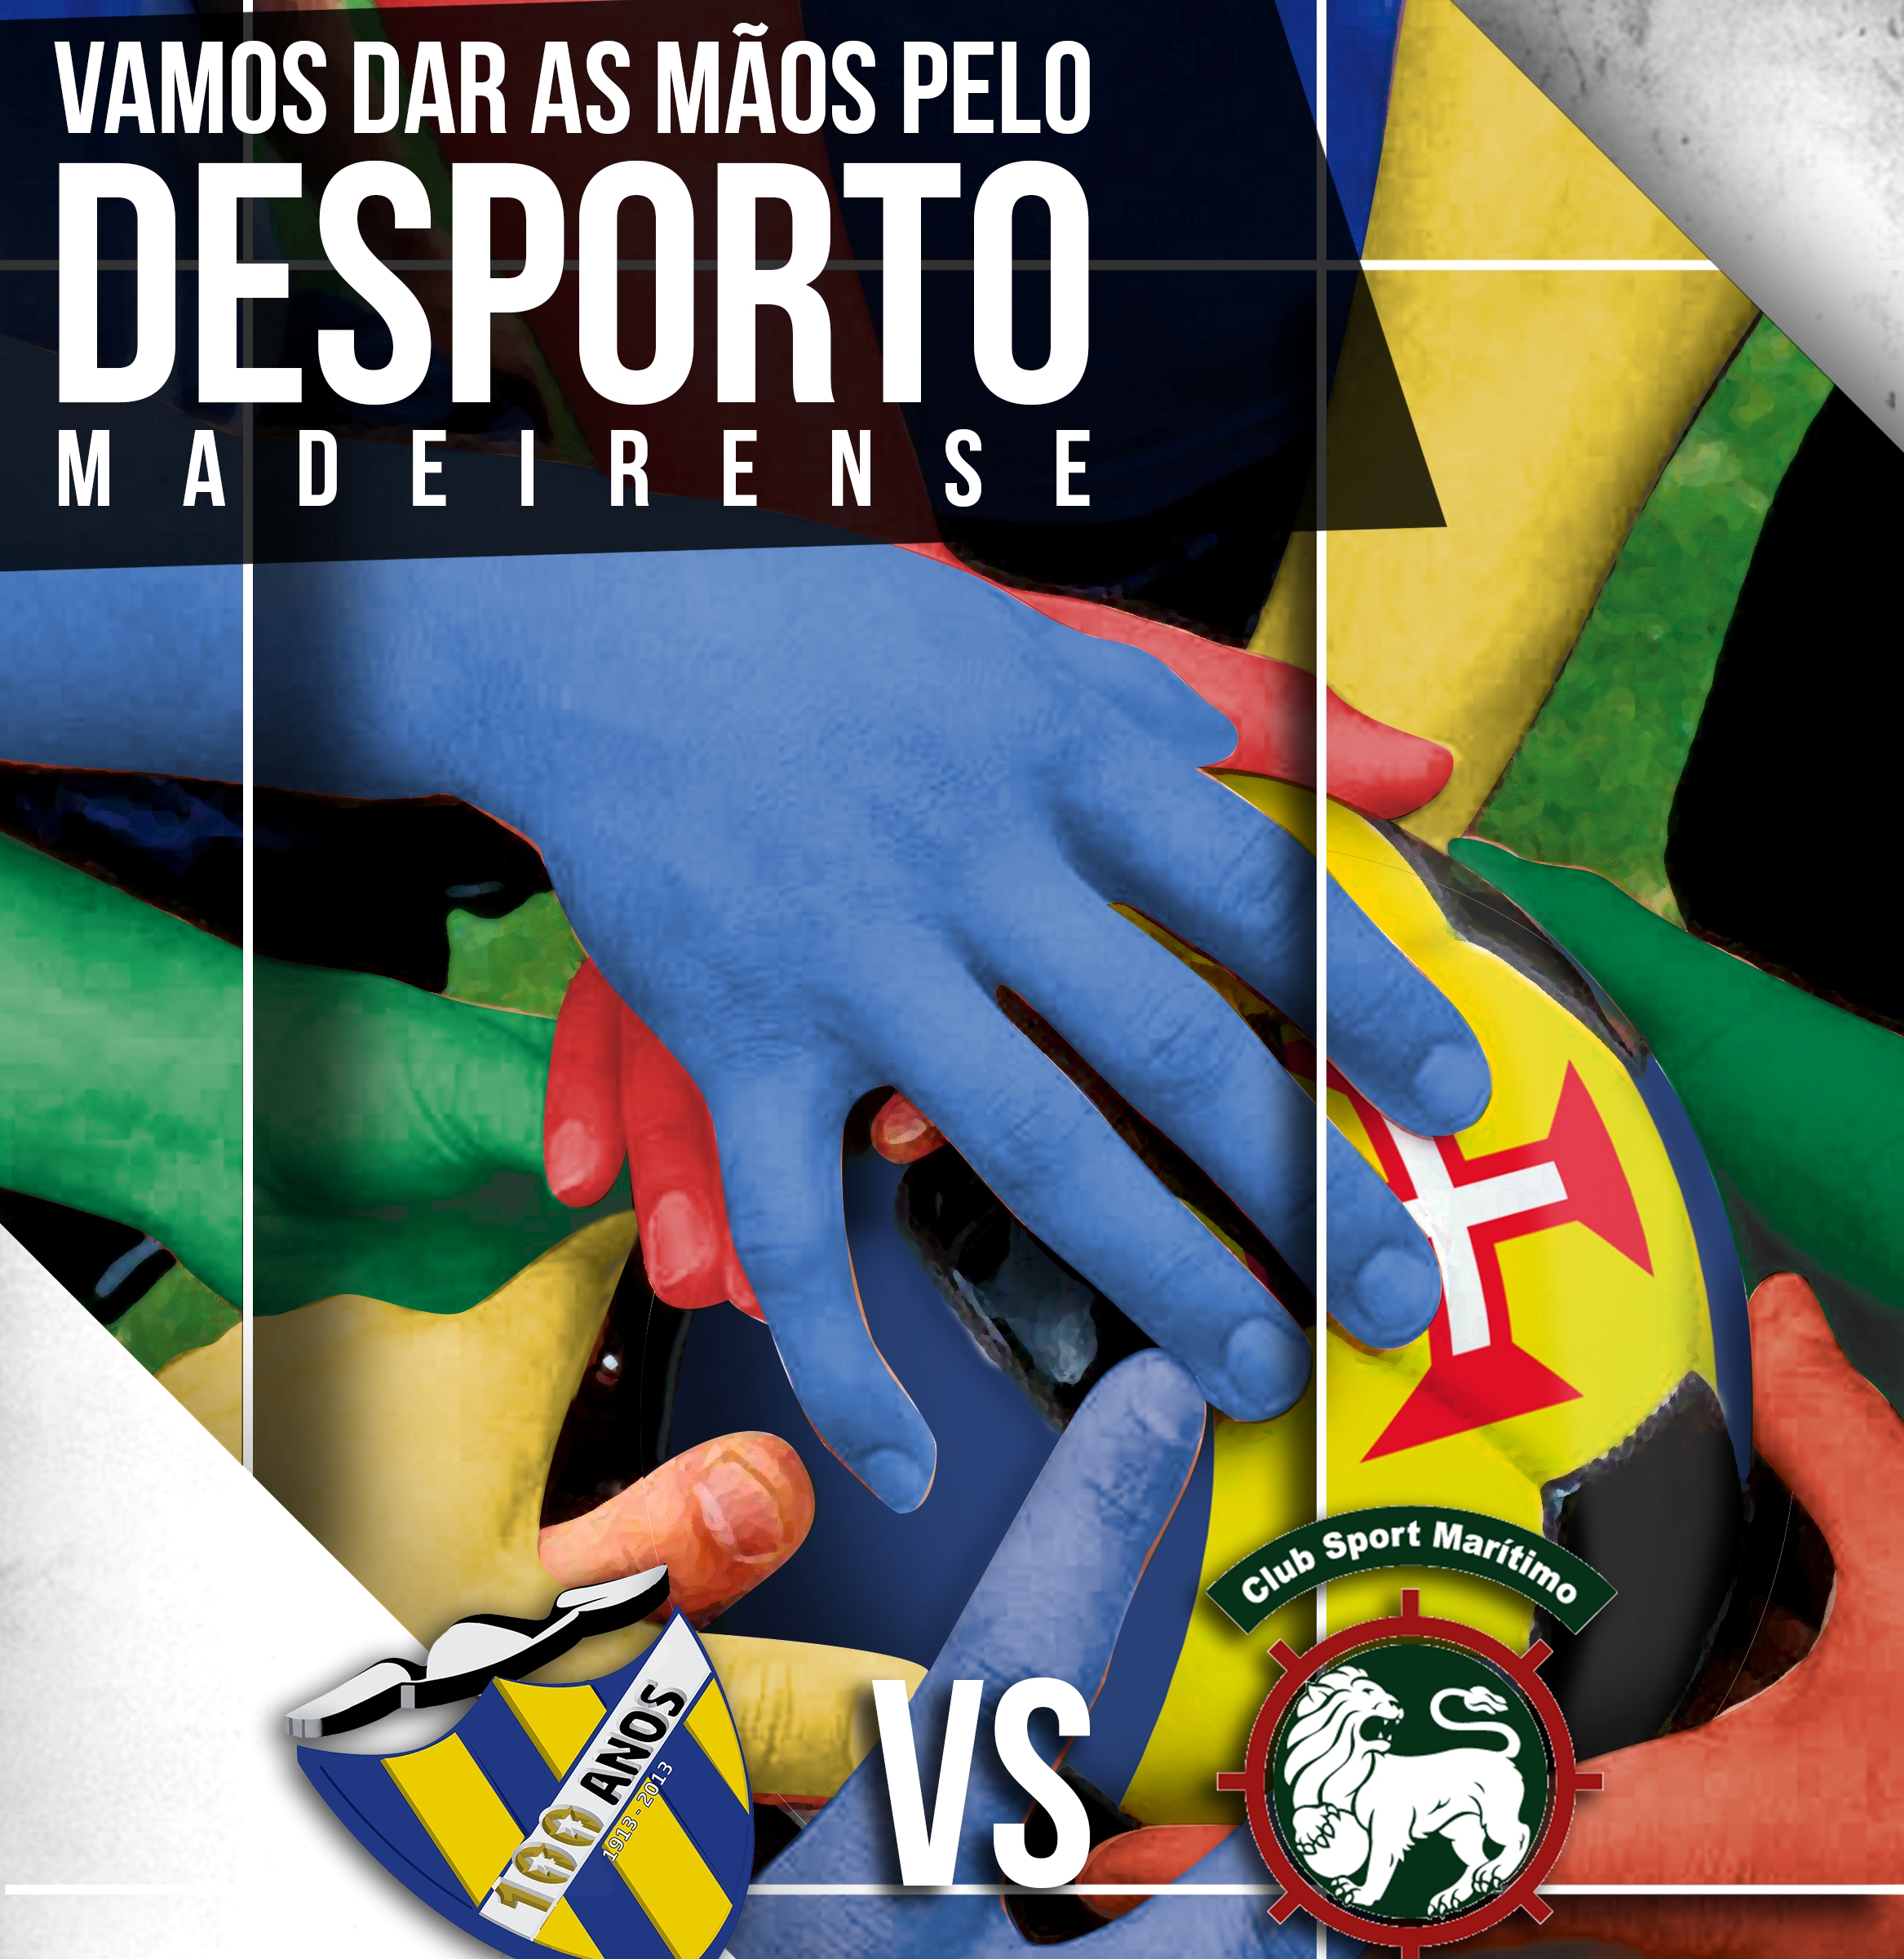 "Vamos dar as mãos pelo Desporto Madeirense"